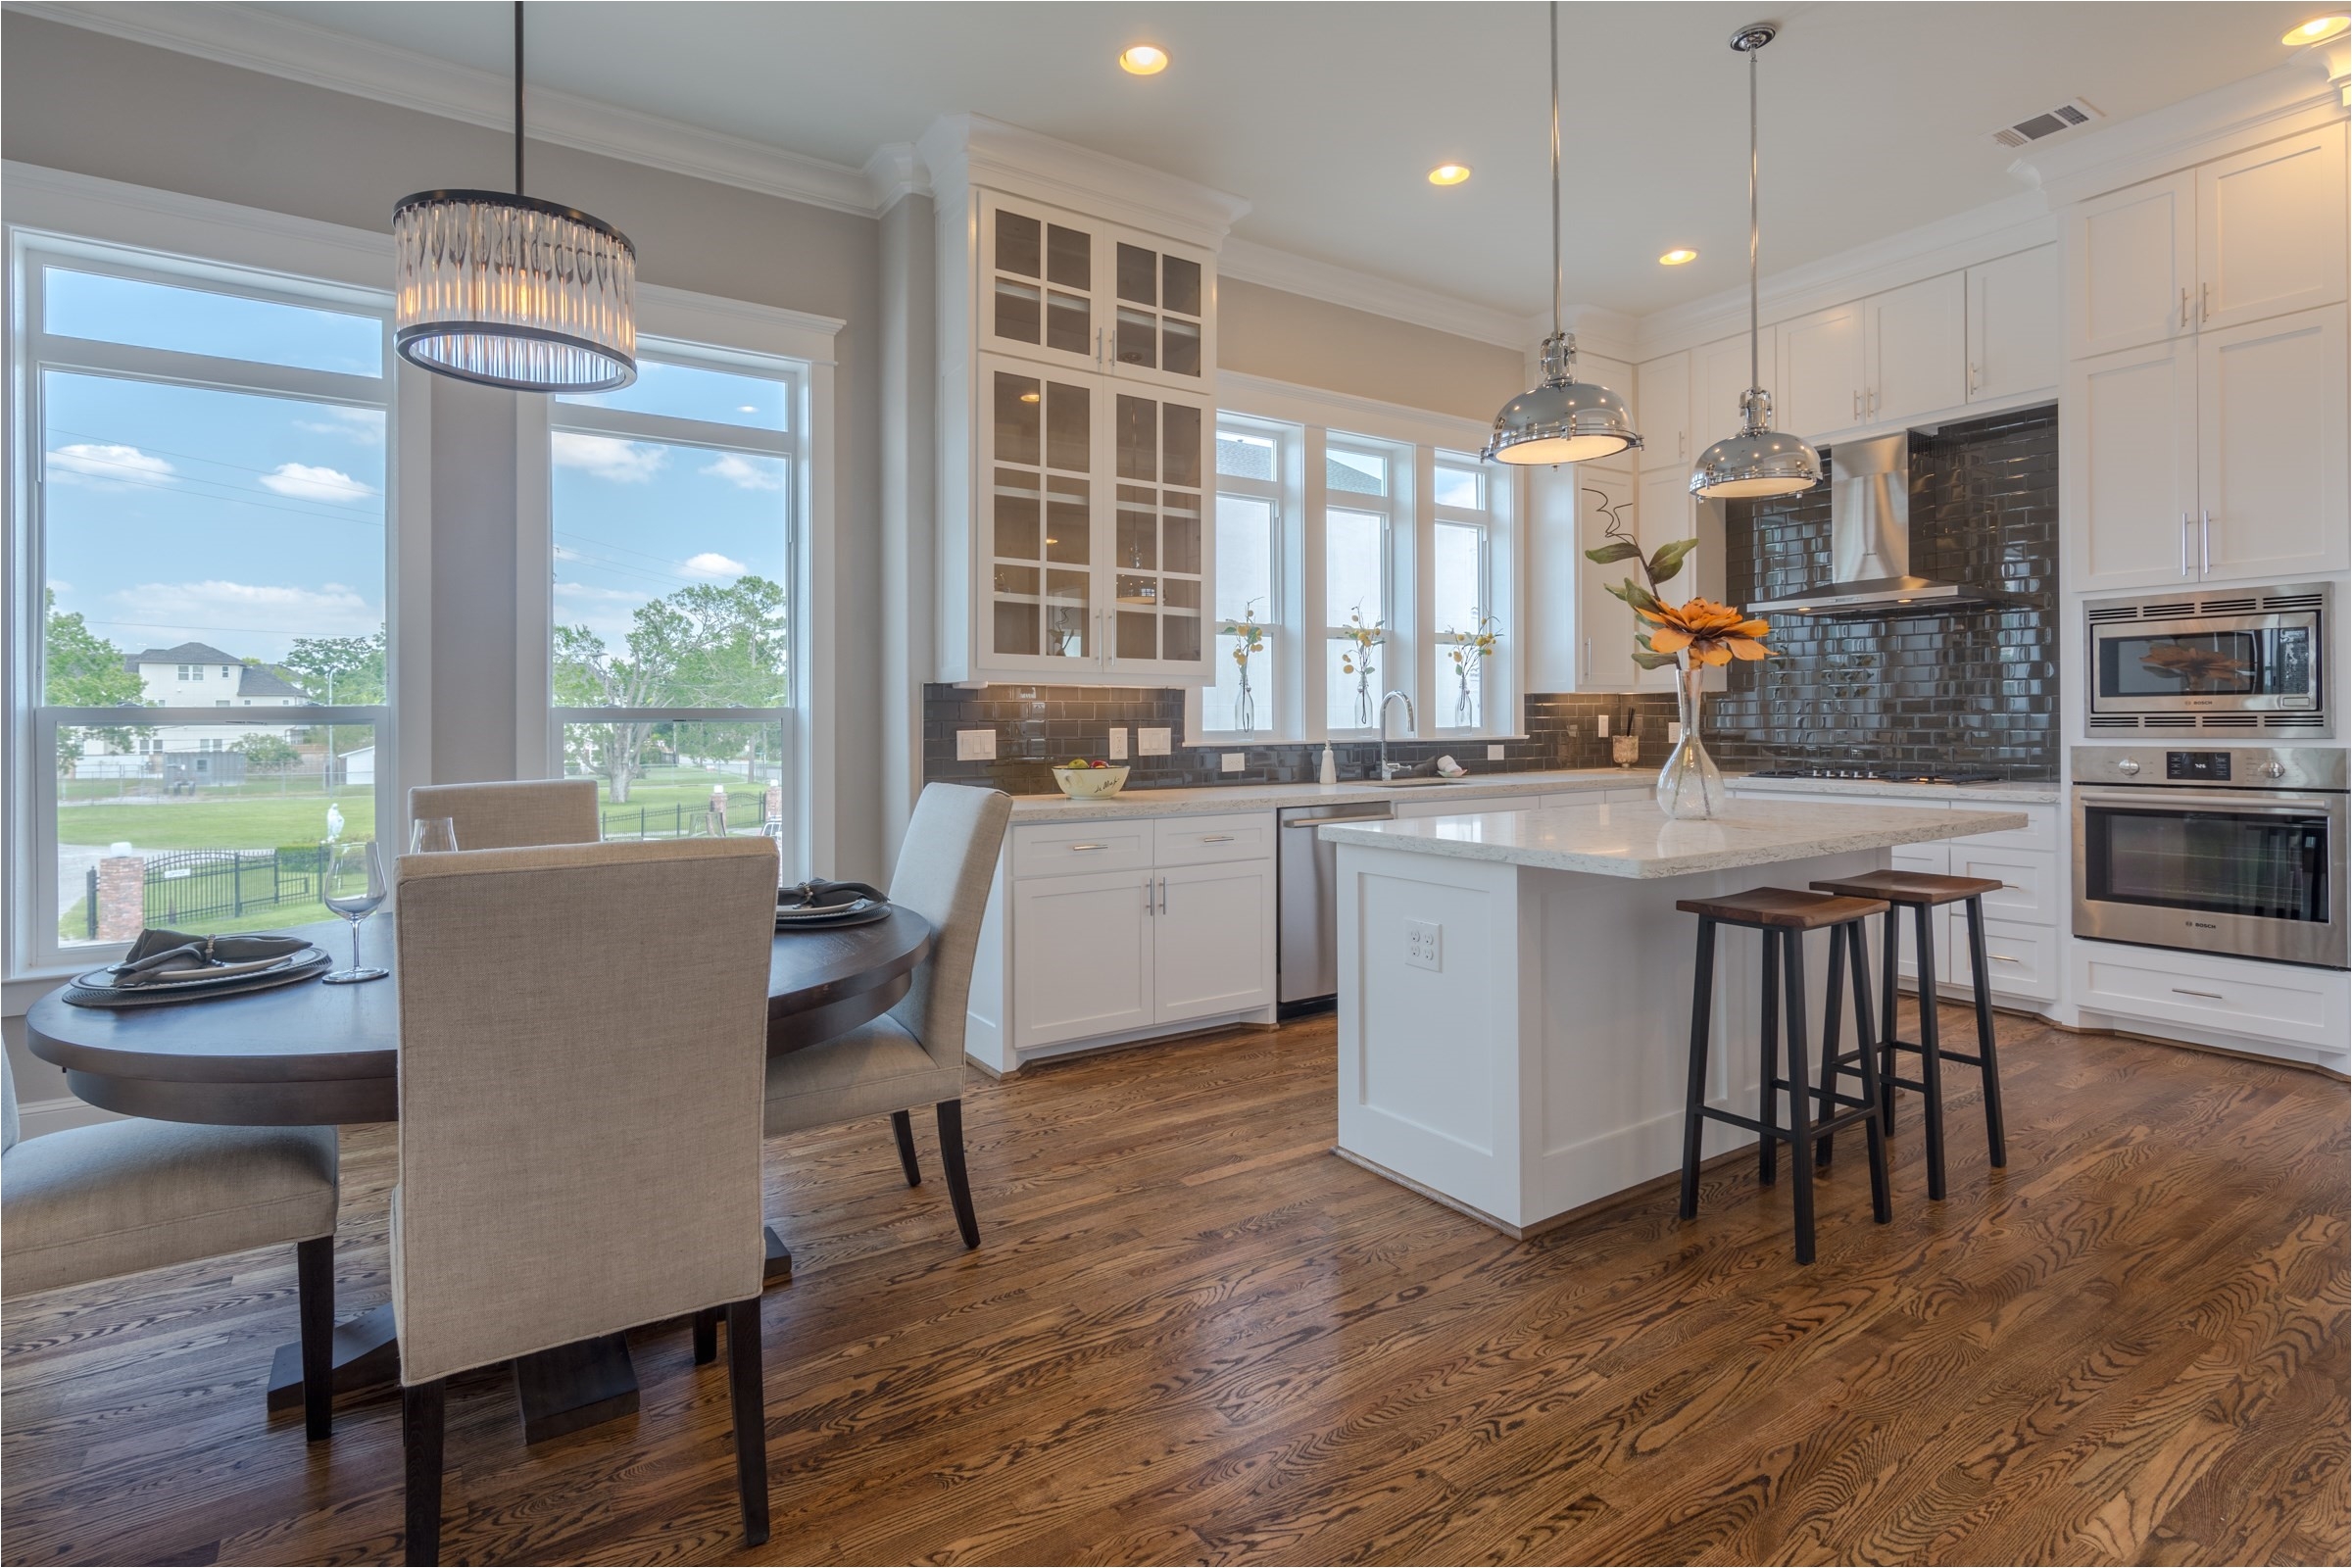 Cook Flooring Longview Tx Listings Search Homesmart Fine Properties